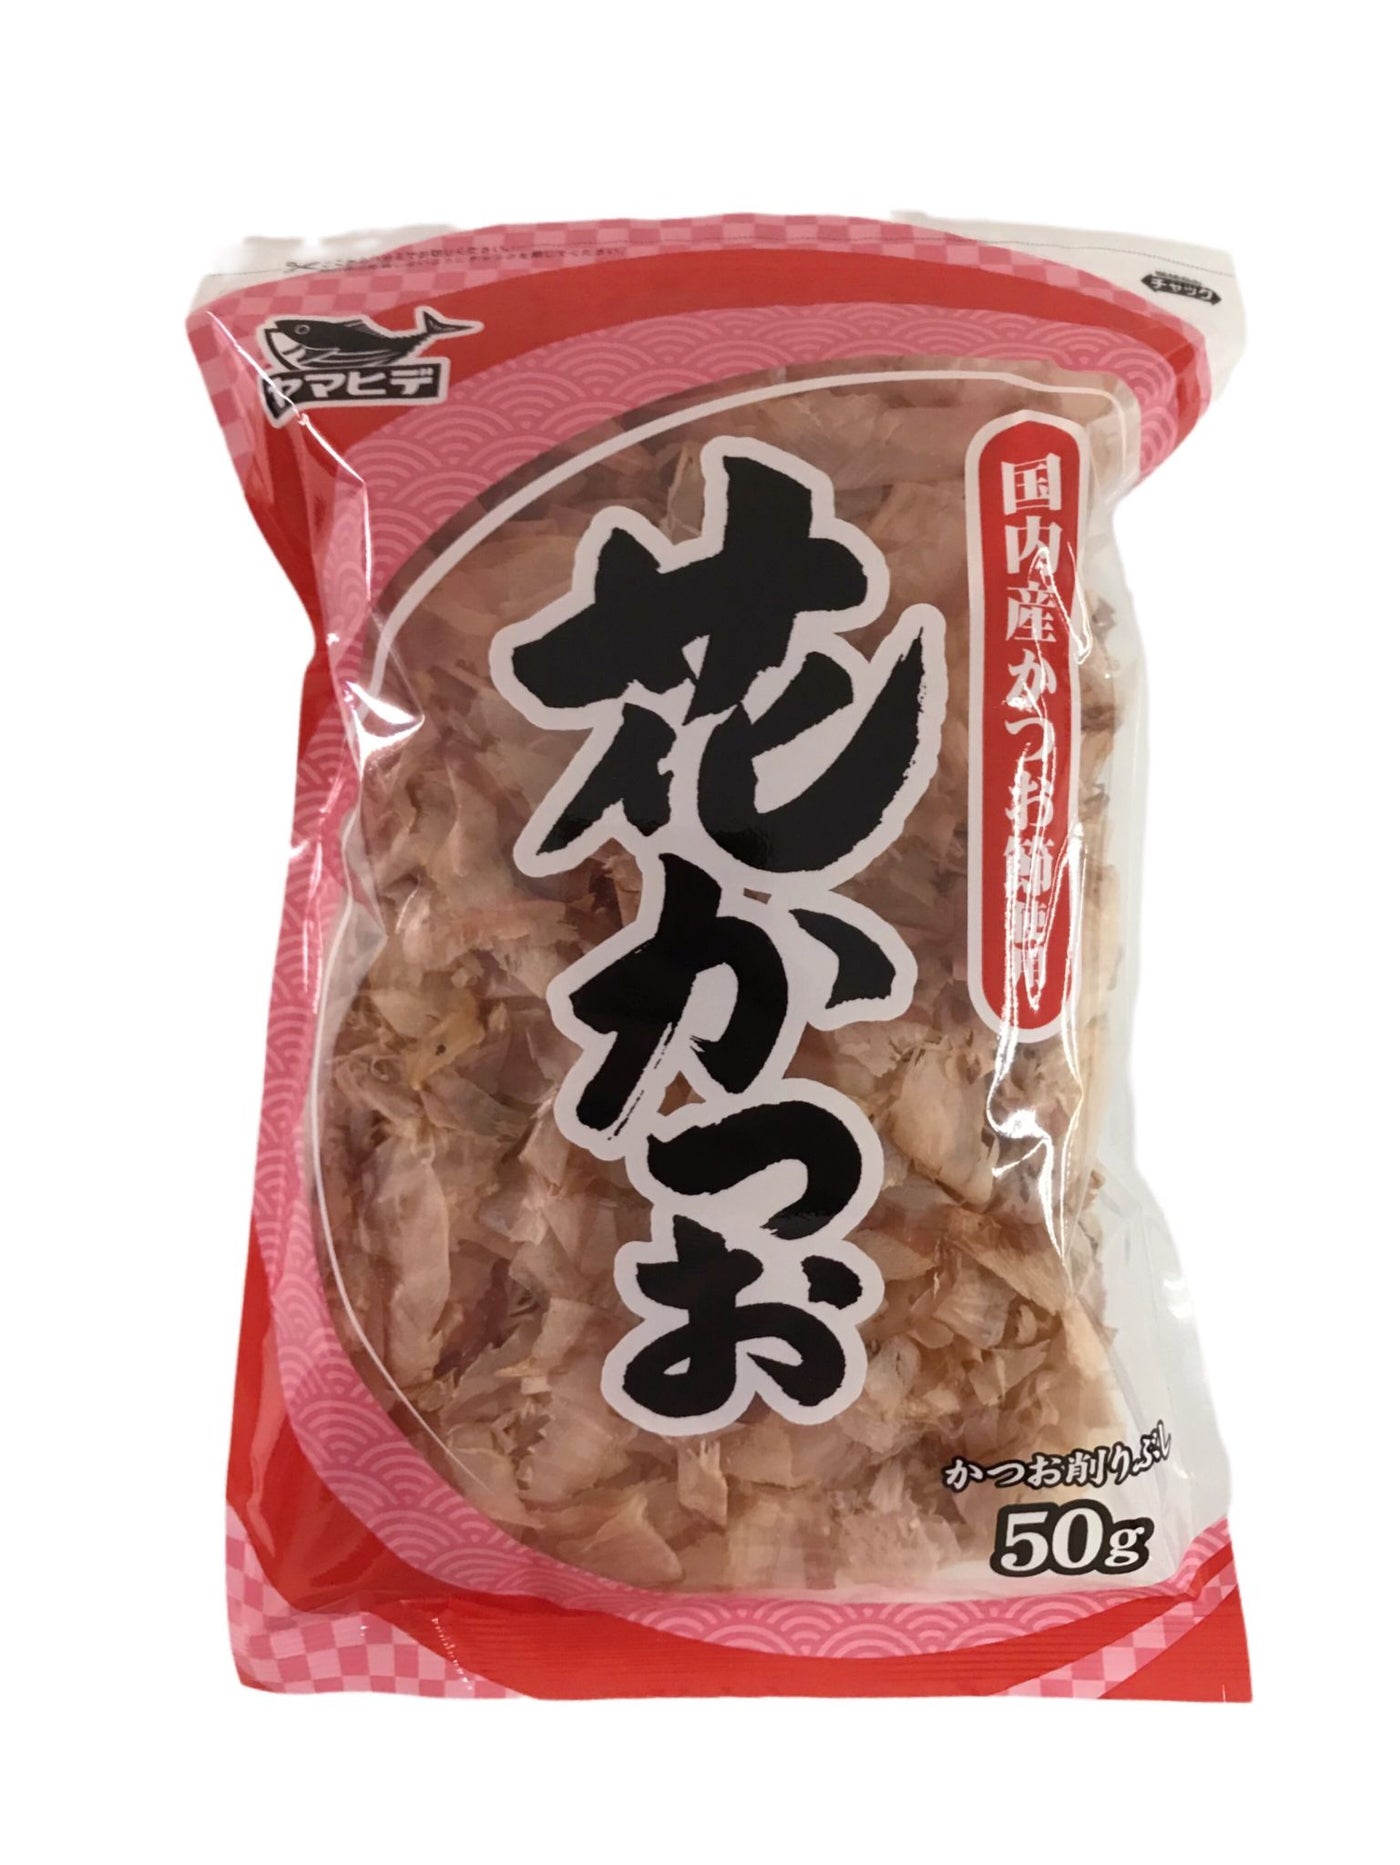 "Yamahide Katsuobushi (Bonito Flakes) 50g